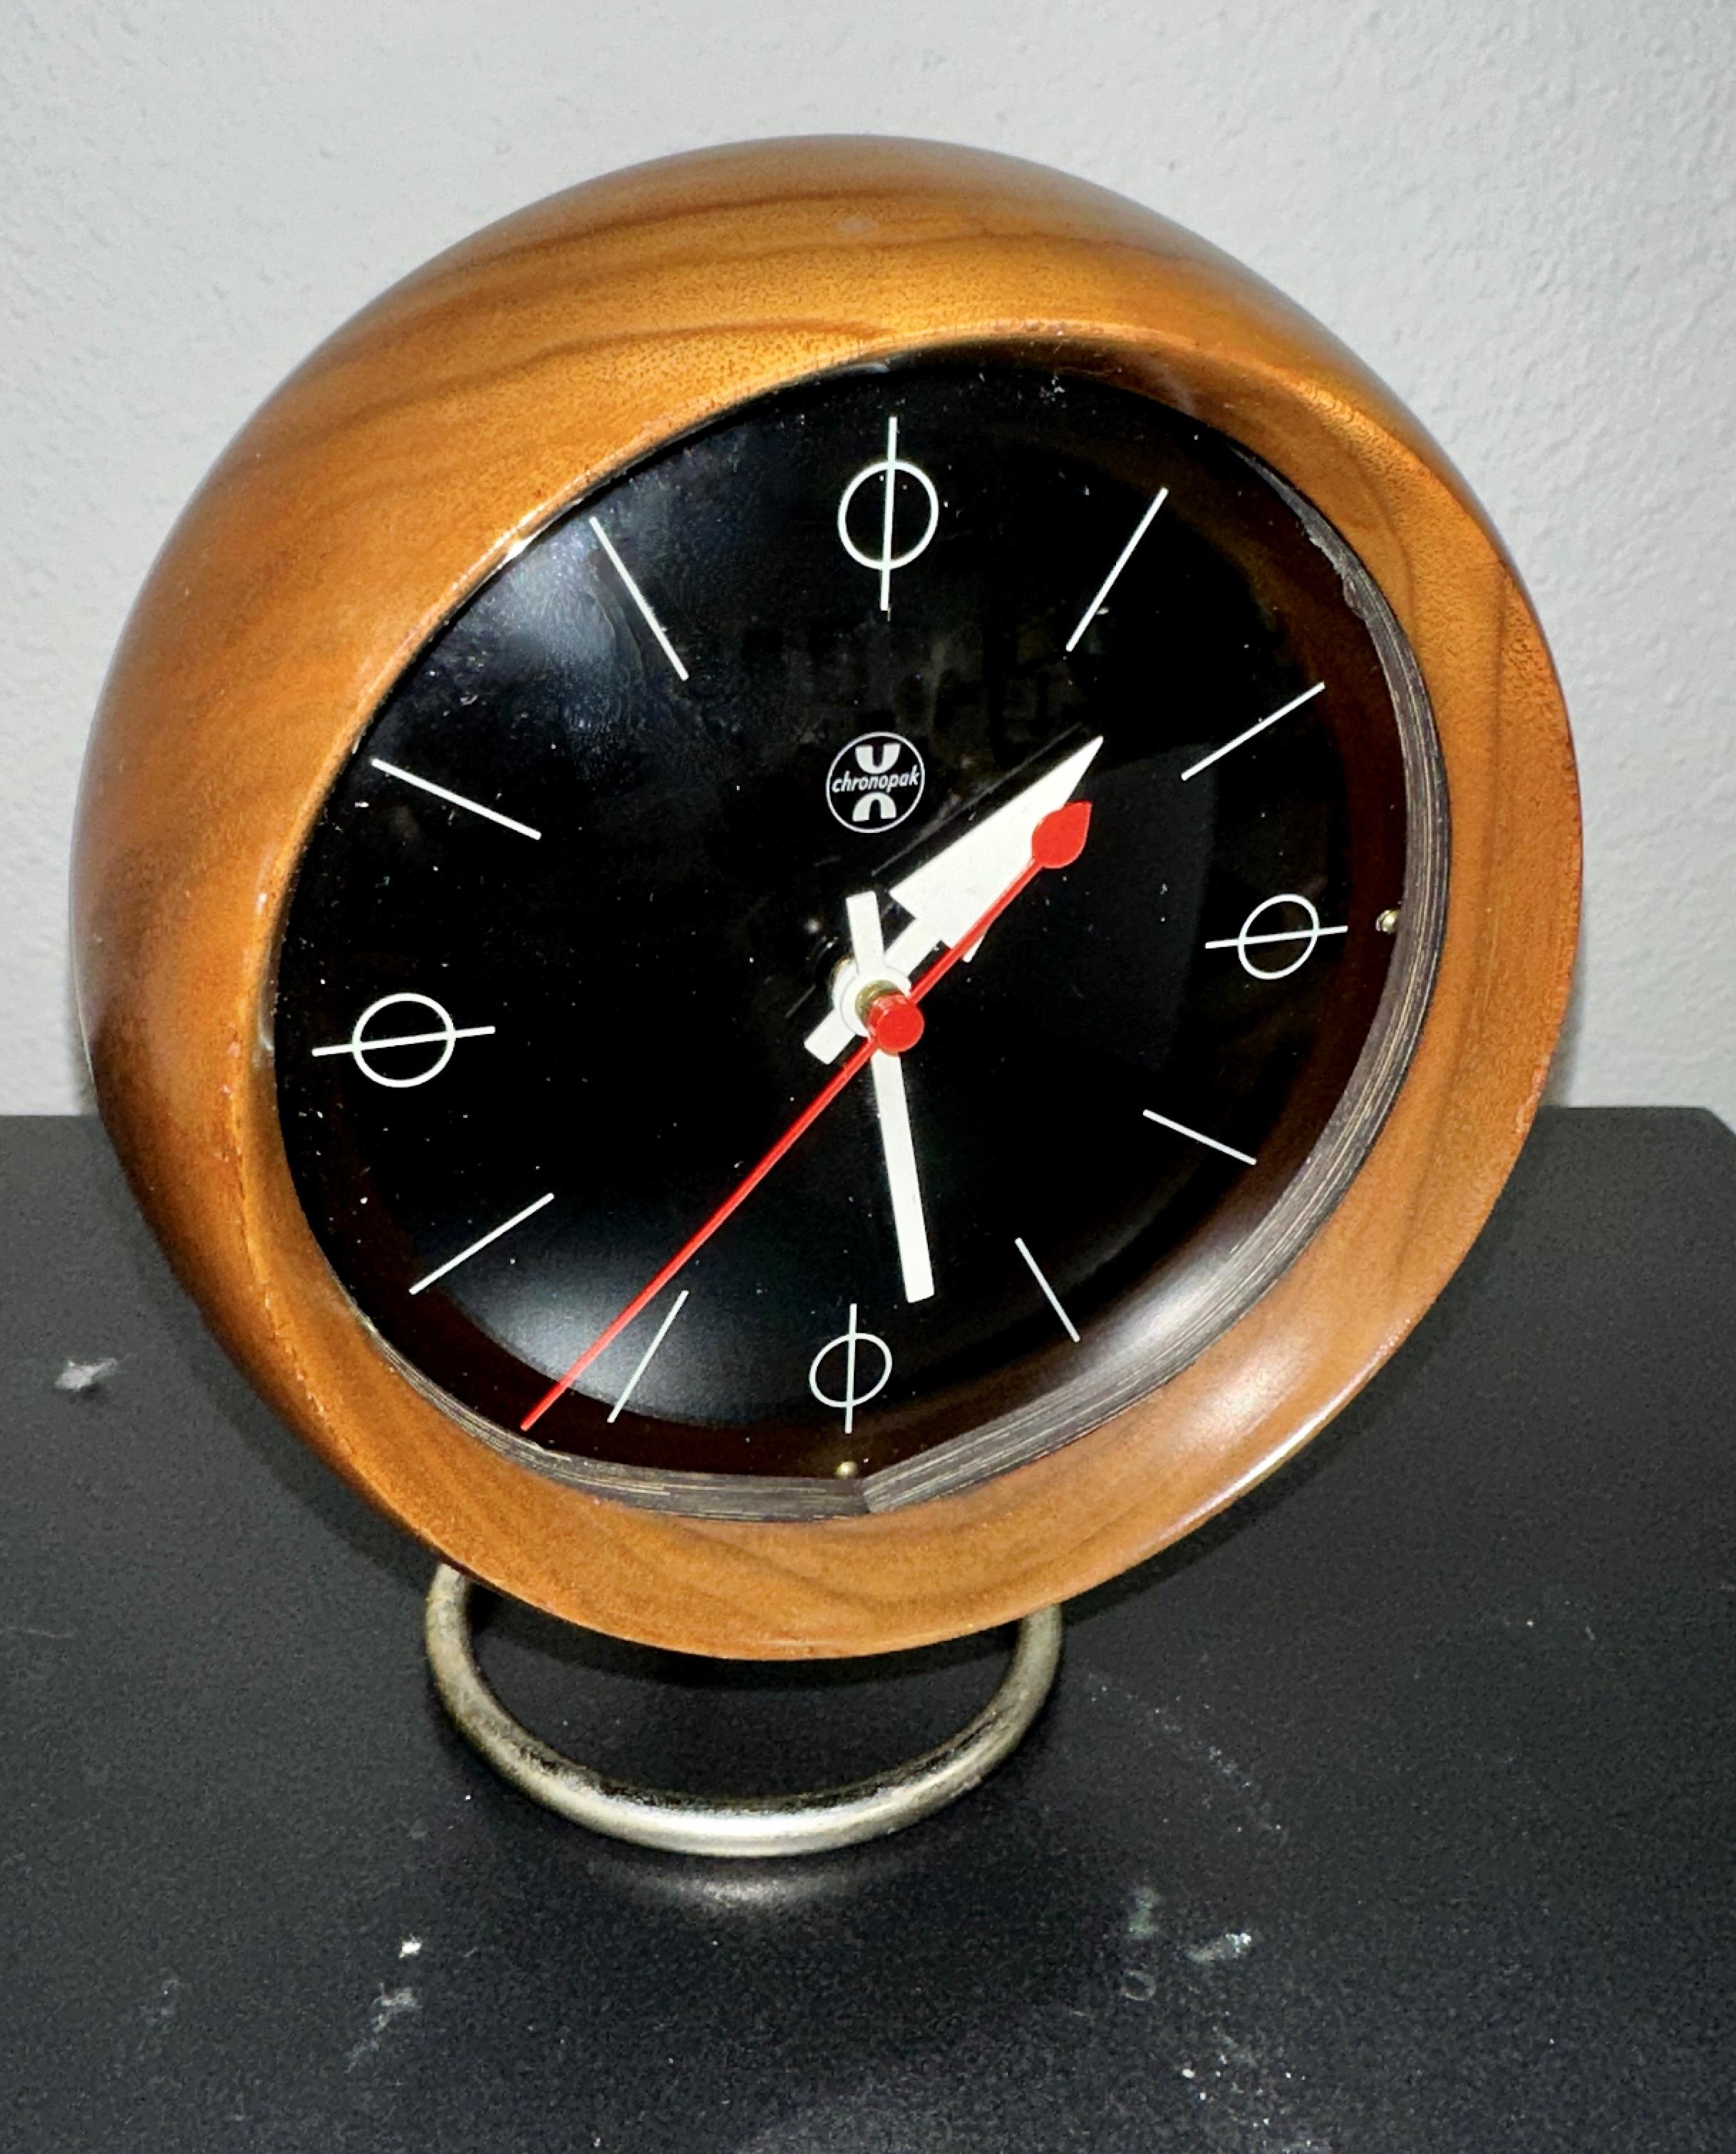 Magnifique exemple d'un design du milieu du siècle réalisé par George Nelson pour la société d'horlogerie Howard Miller, cette horloge Chronopak modèle 4765A est en très bon état, fonctionne bien et garde l'heure. Il a conservé son étiquette